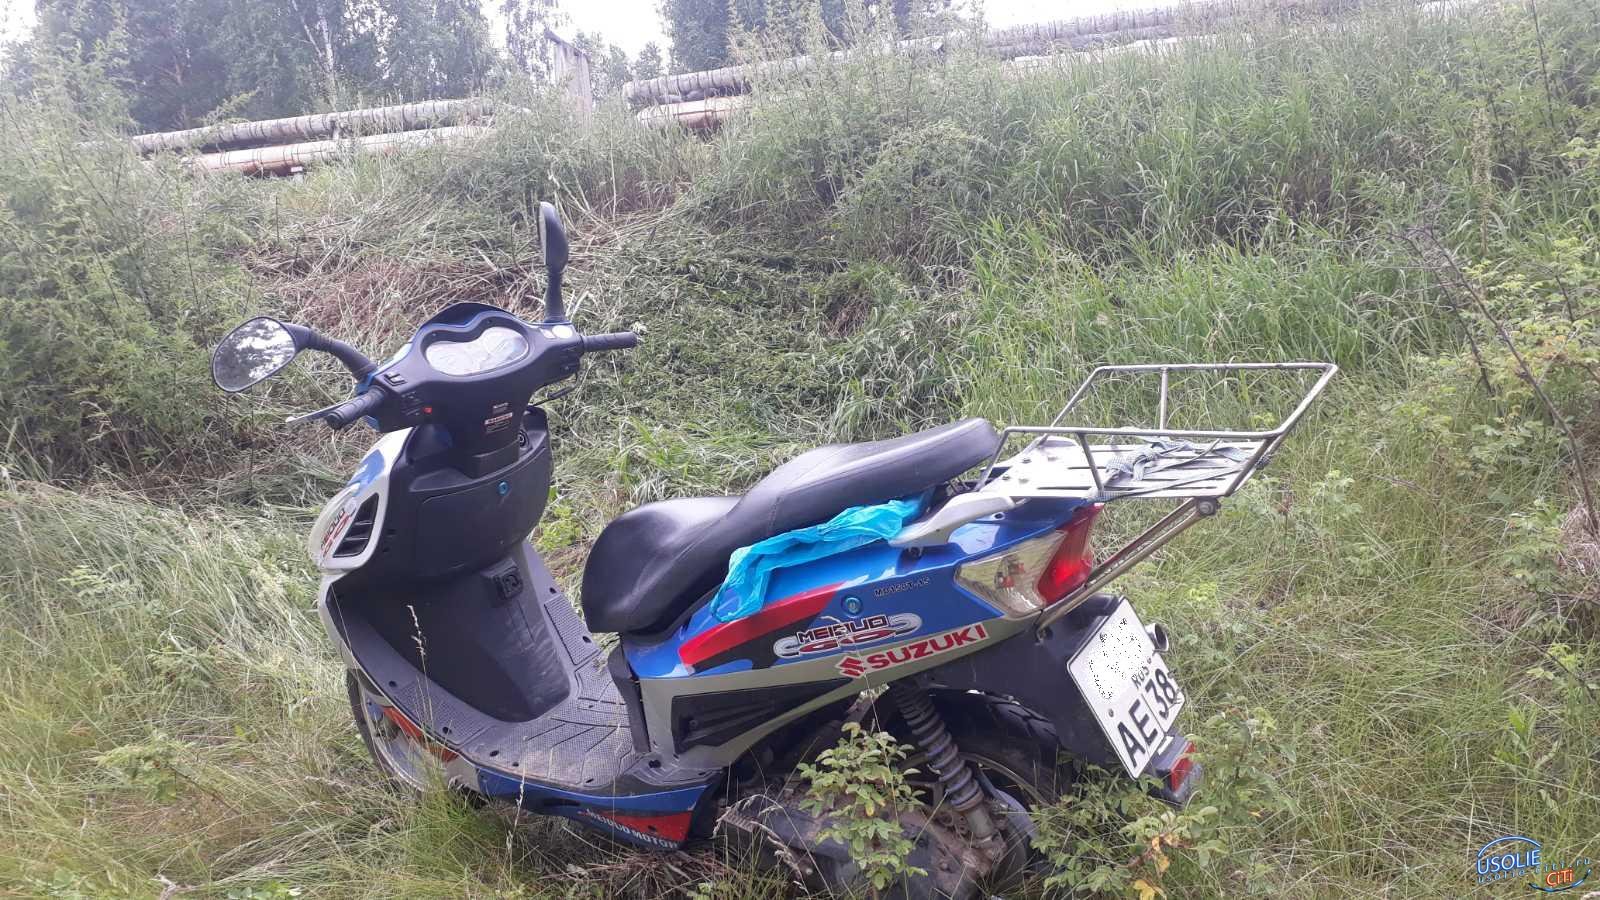  В Усольском районе пьяный пенсионер перевернулся на мотоцикле